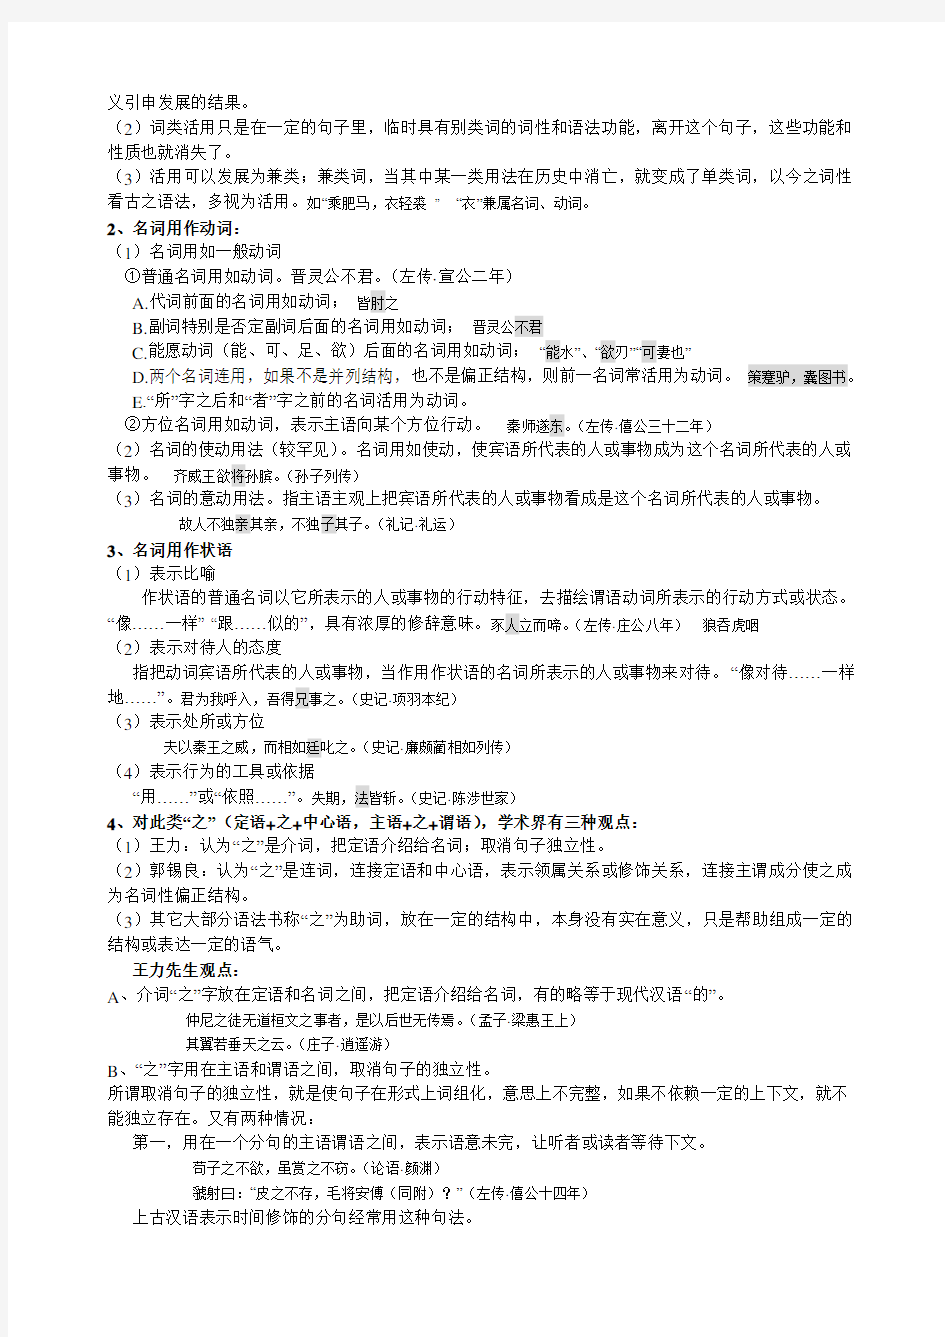 (完整版)古代汉语考试重点